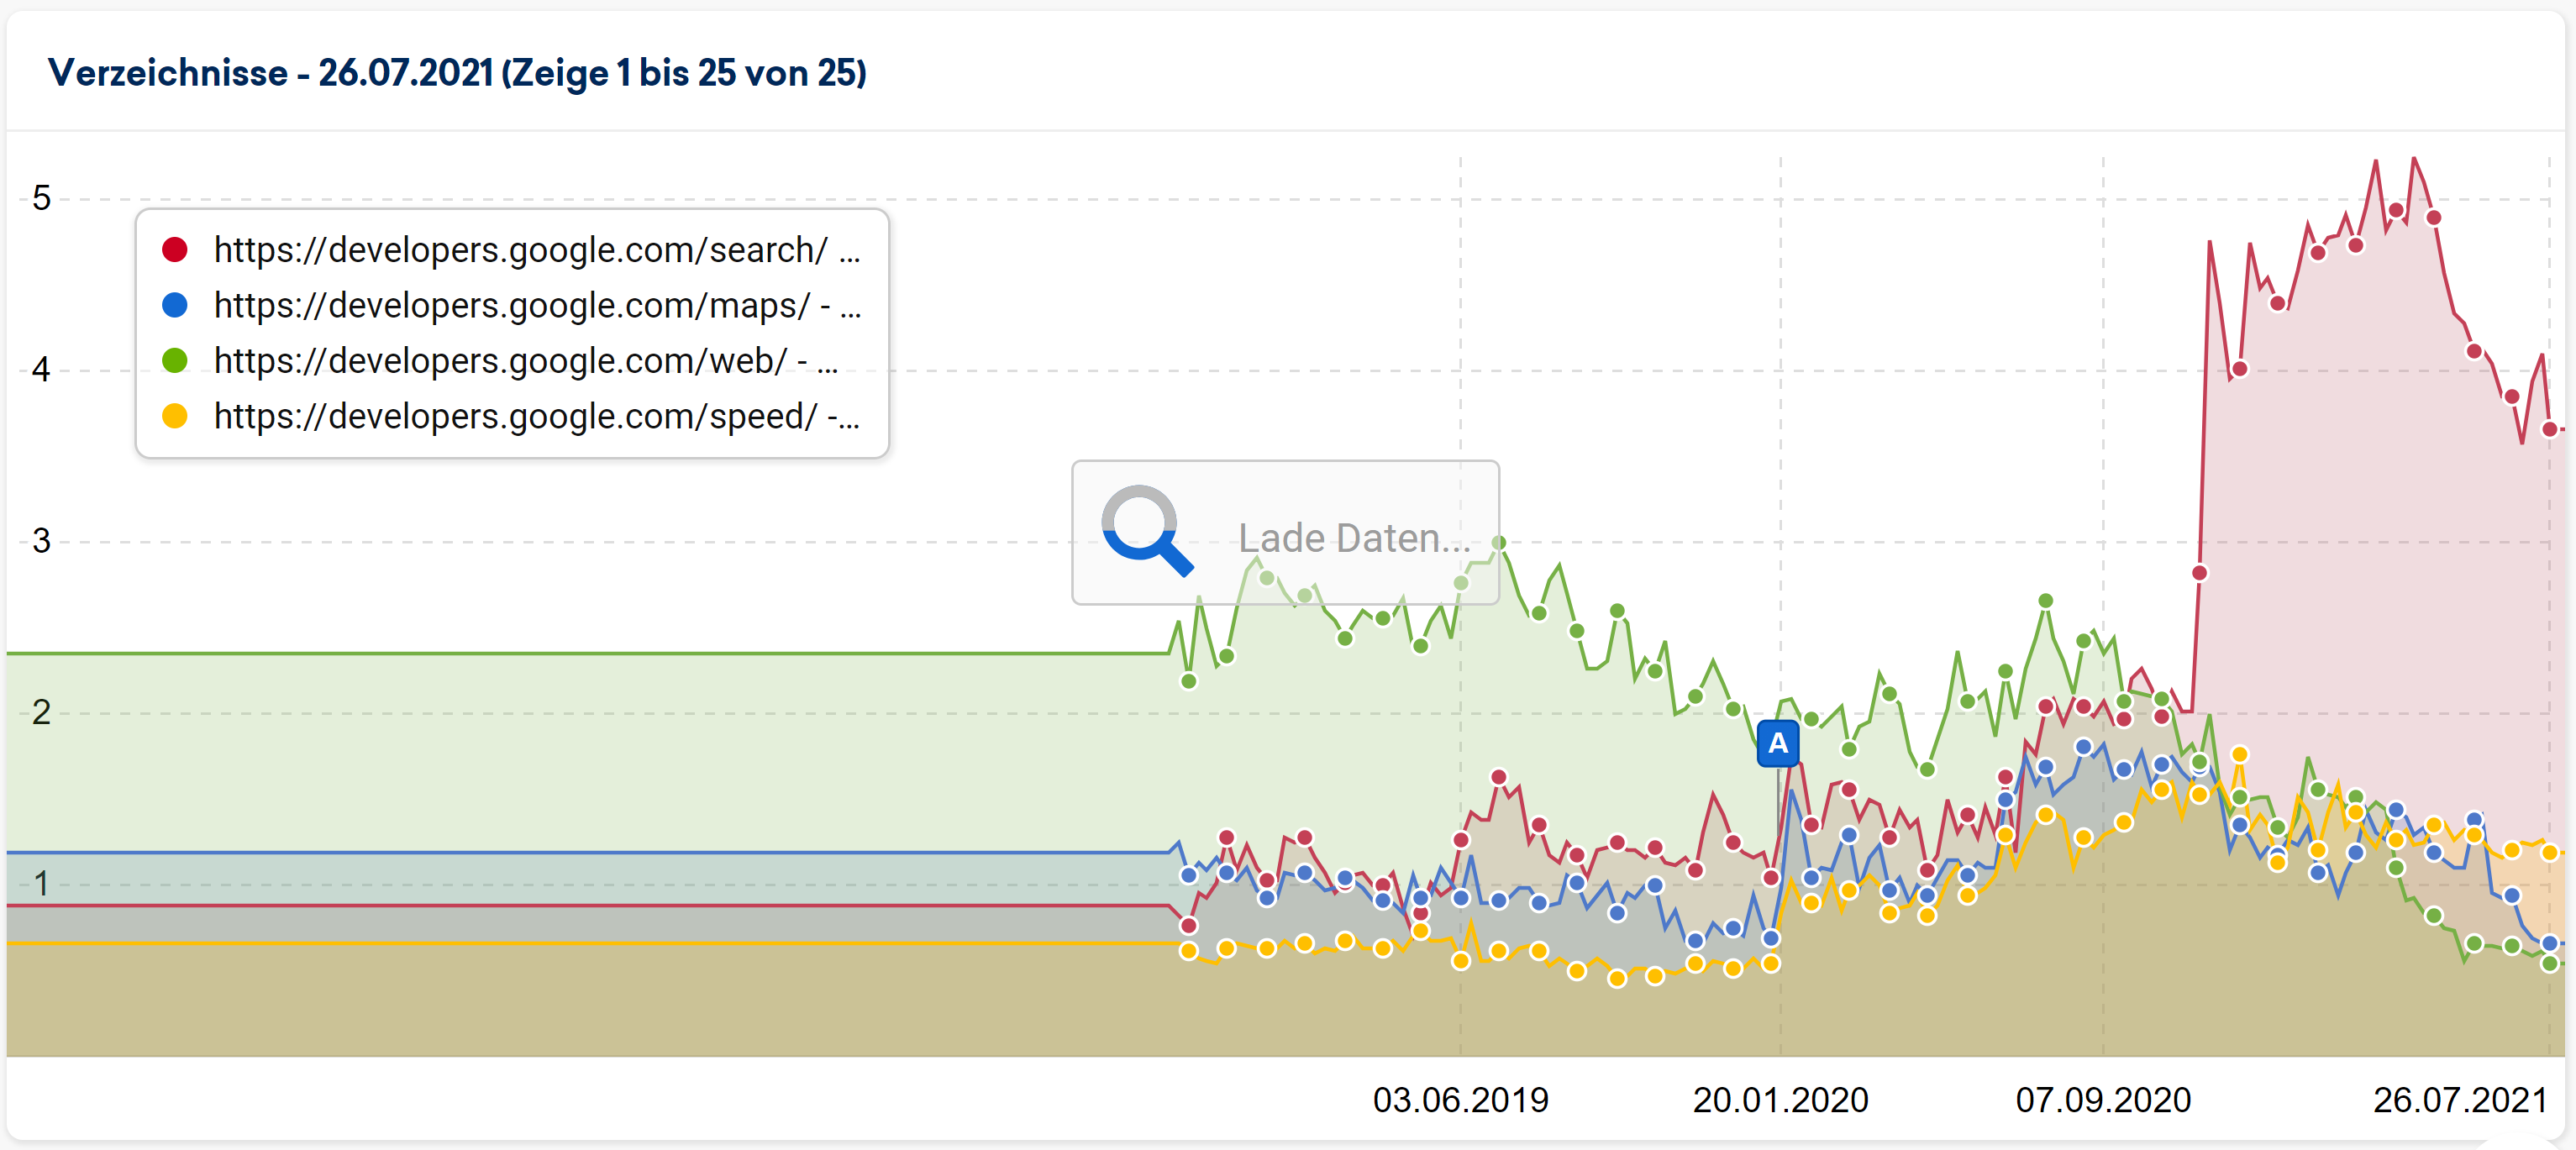 Verlauf der Sichtbarkeit der wichtigsten Verzeichnisse unterhalb von developers.google.com - Search hat an Sichtbarkeit verloren